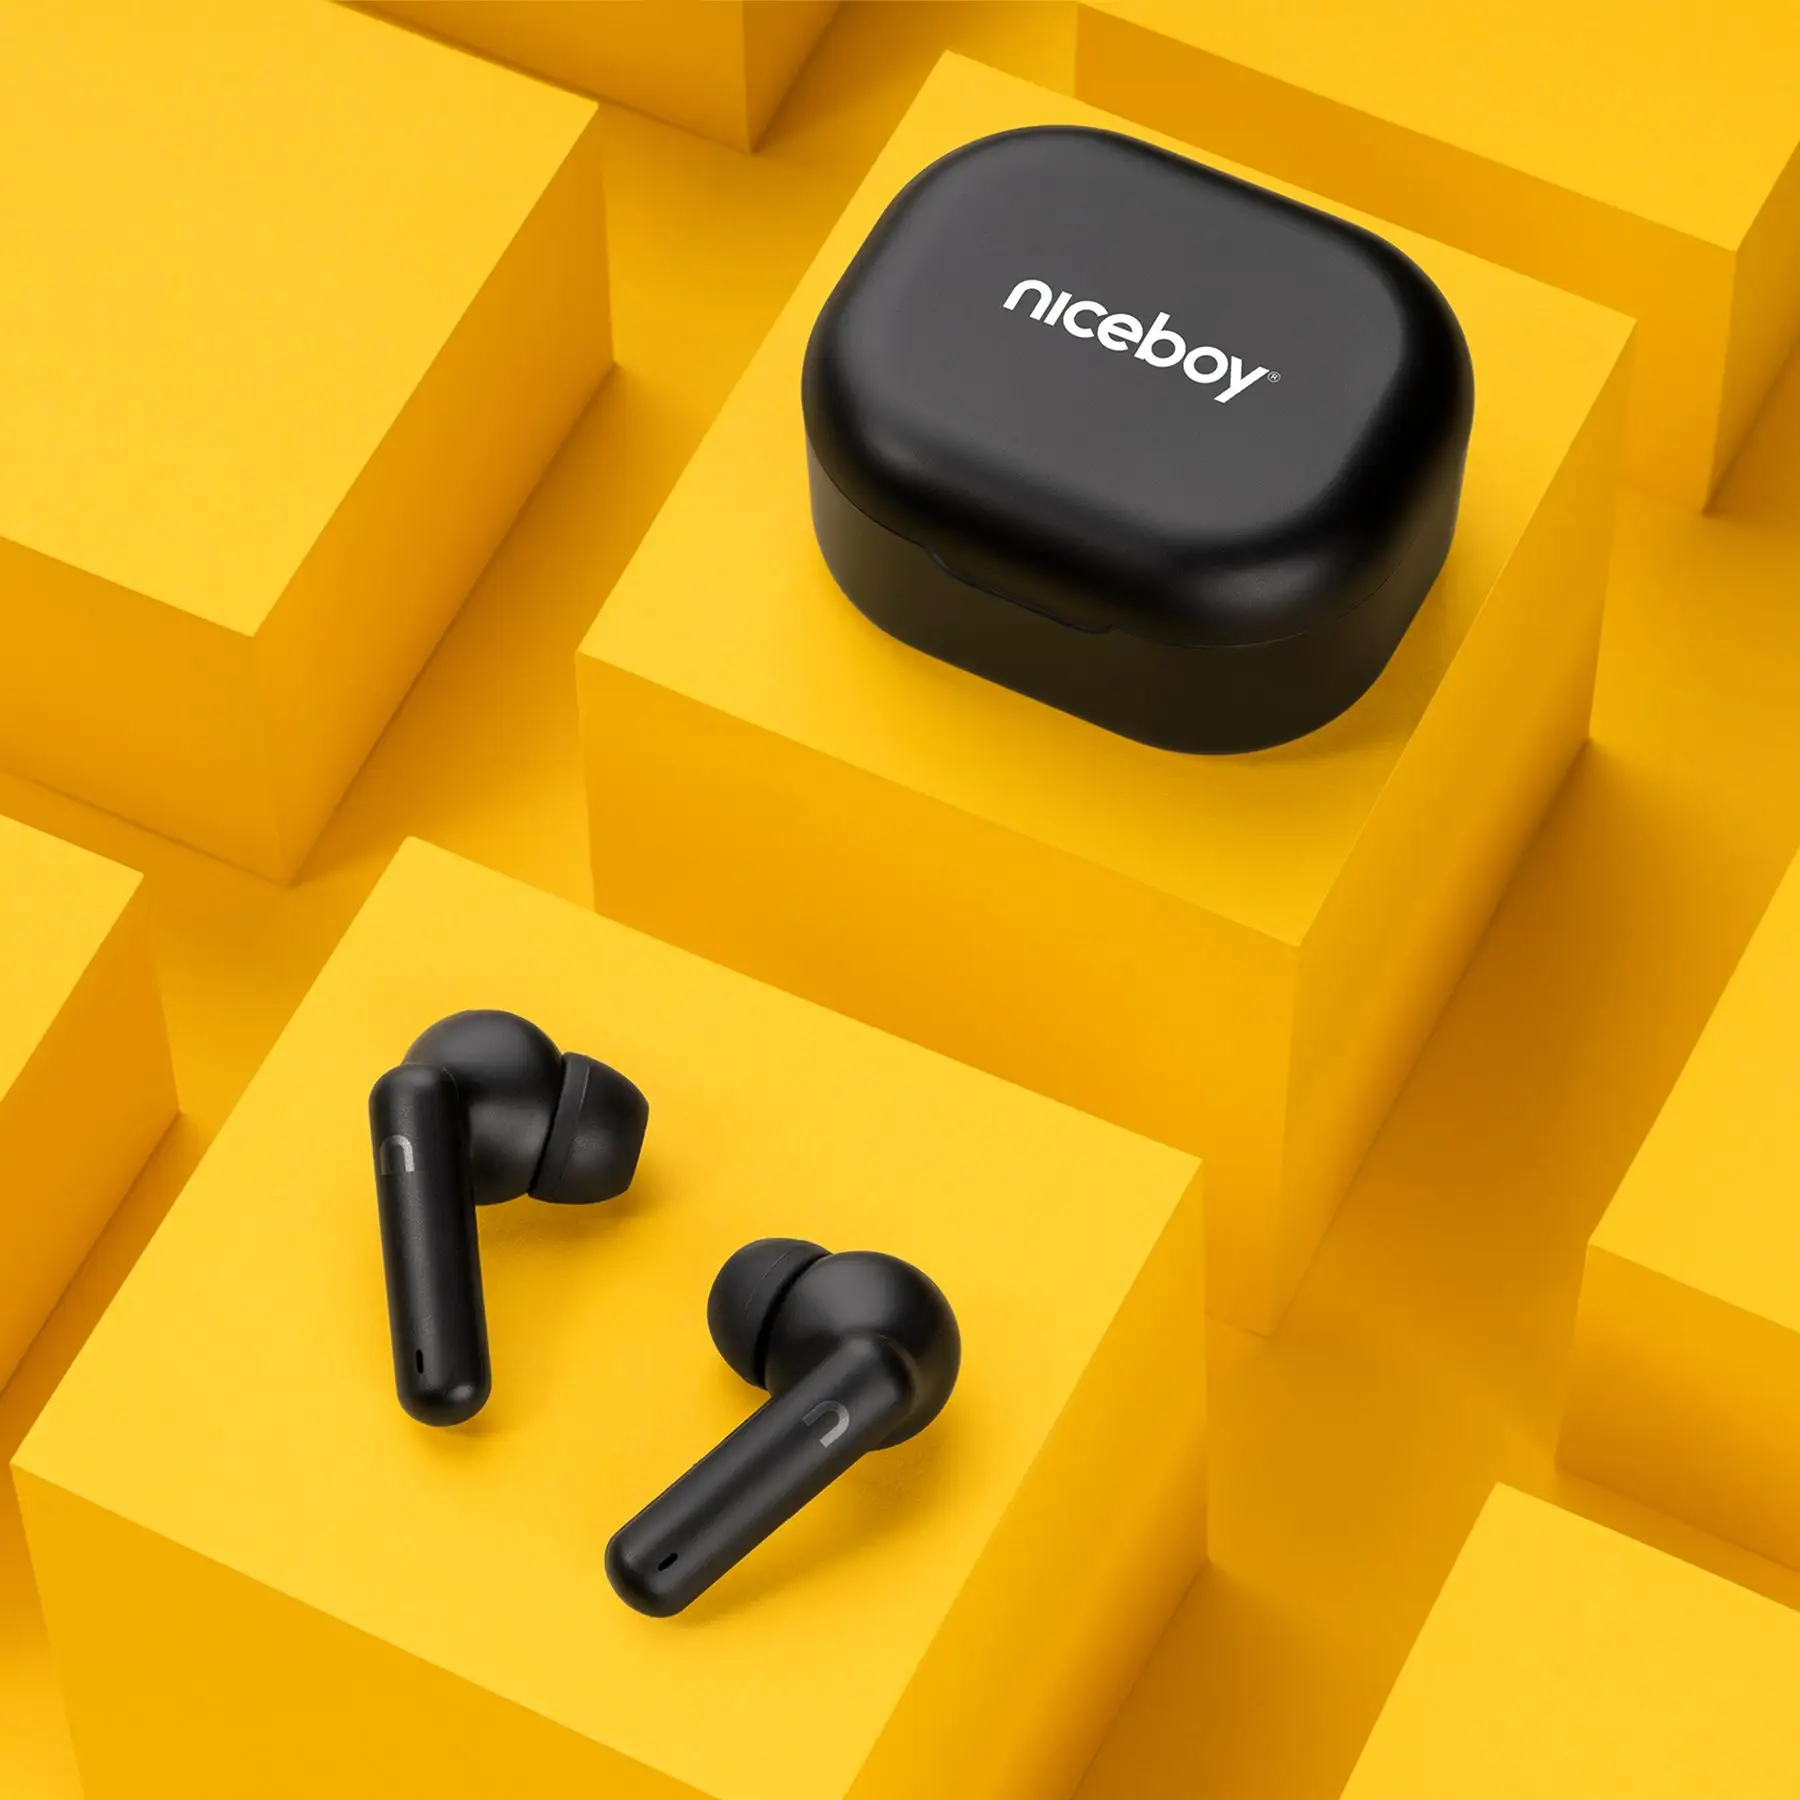  Bluetooth slúchadlá niceboy hive pins 3 handsfree mikrofón aplikácia ion ekvalizér skvelý zvuk dlhá výdrž na nabitie nabíjacie puzdro 